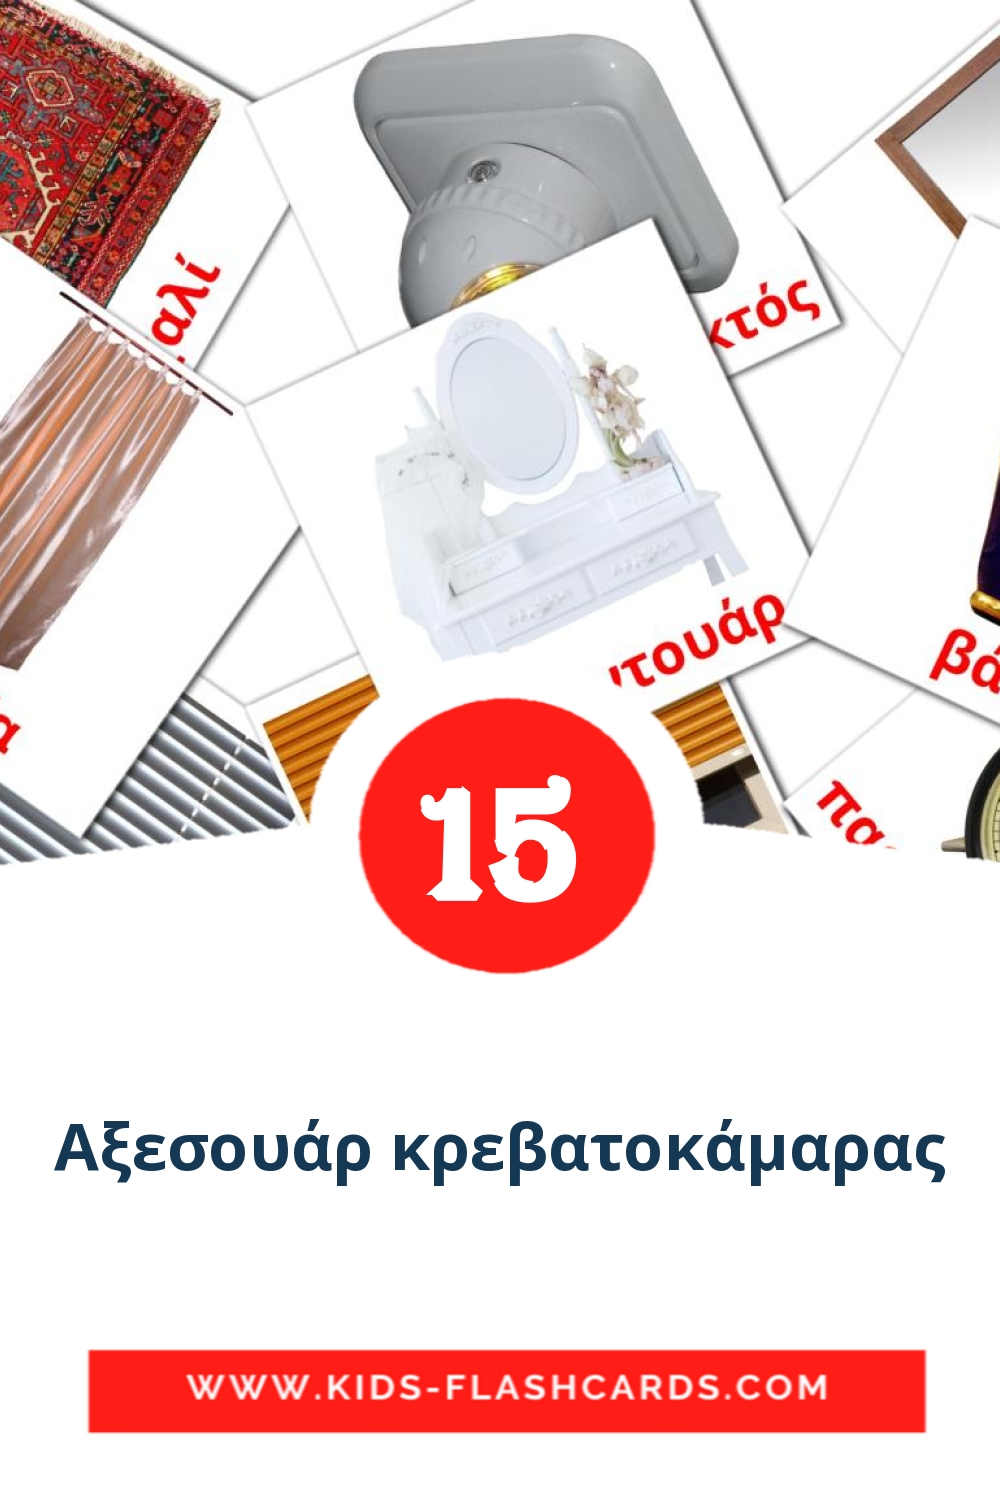 15 tarjetas didacticas de Αξεσουάρ κρεβατοκάμαρας para el jardín de infancia en griego